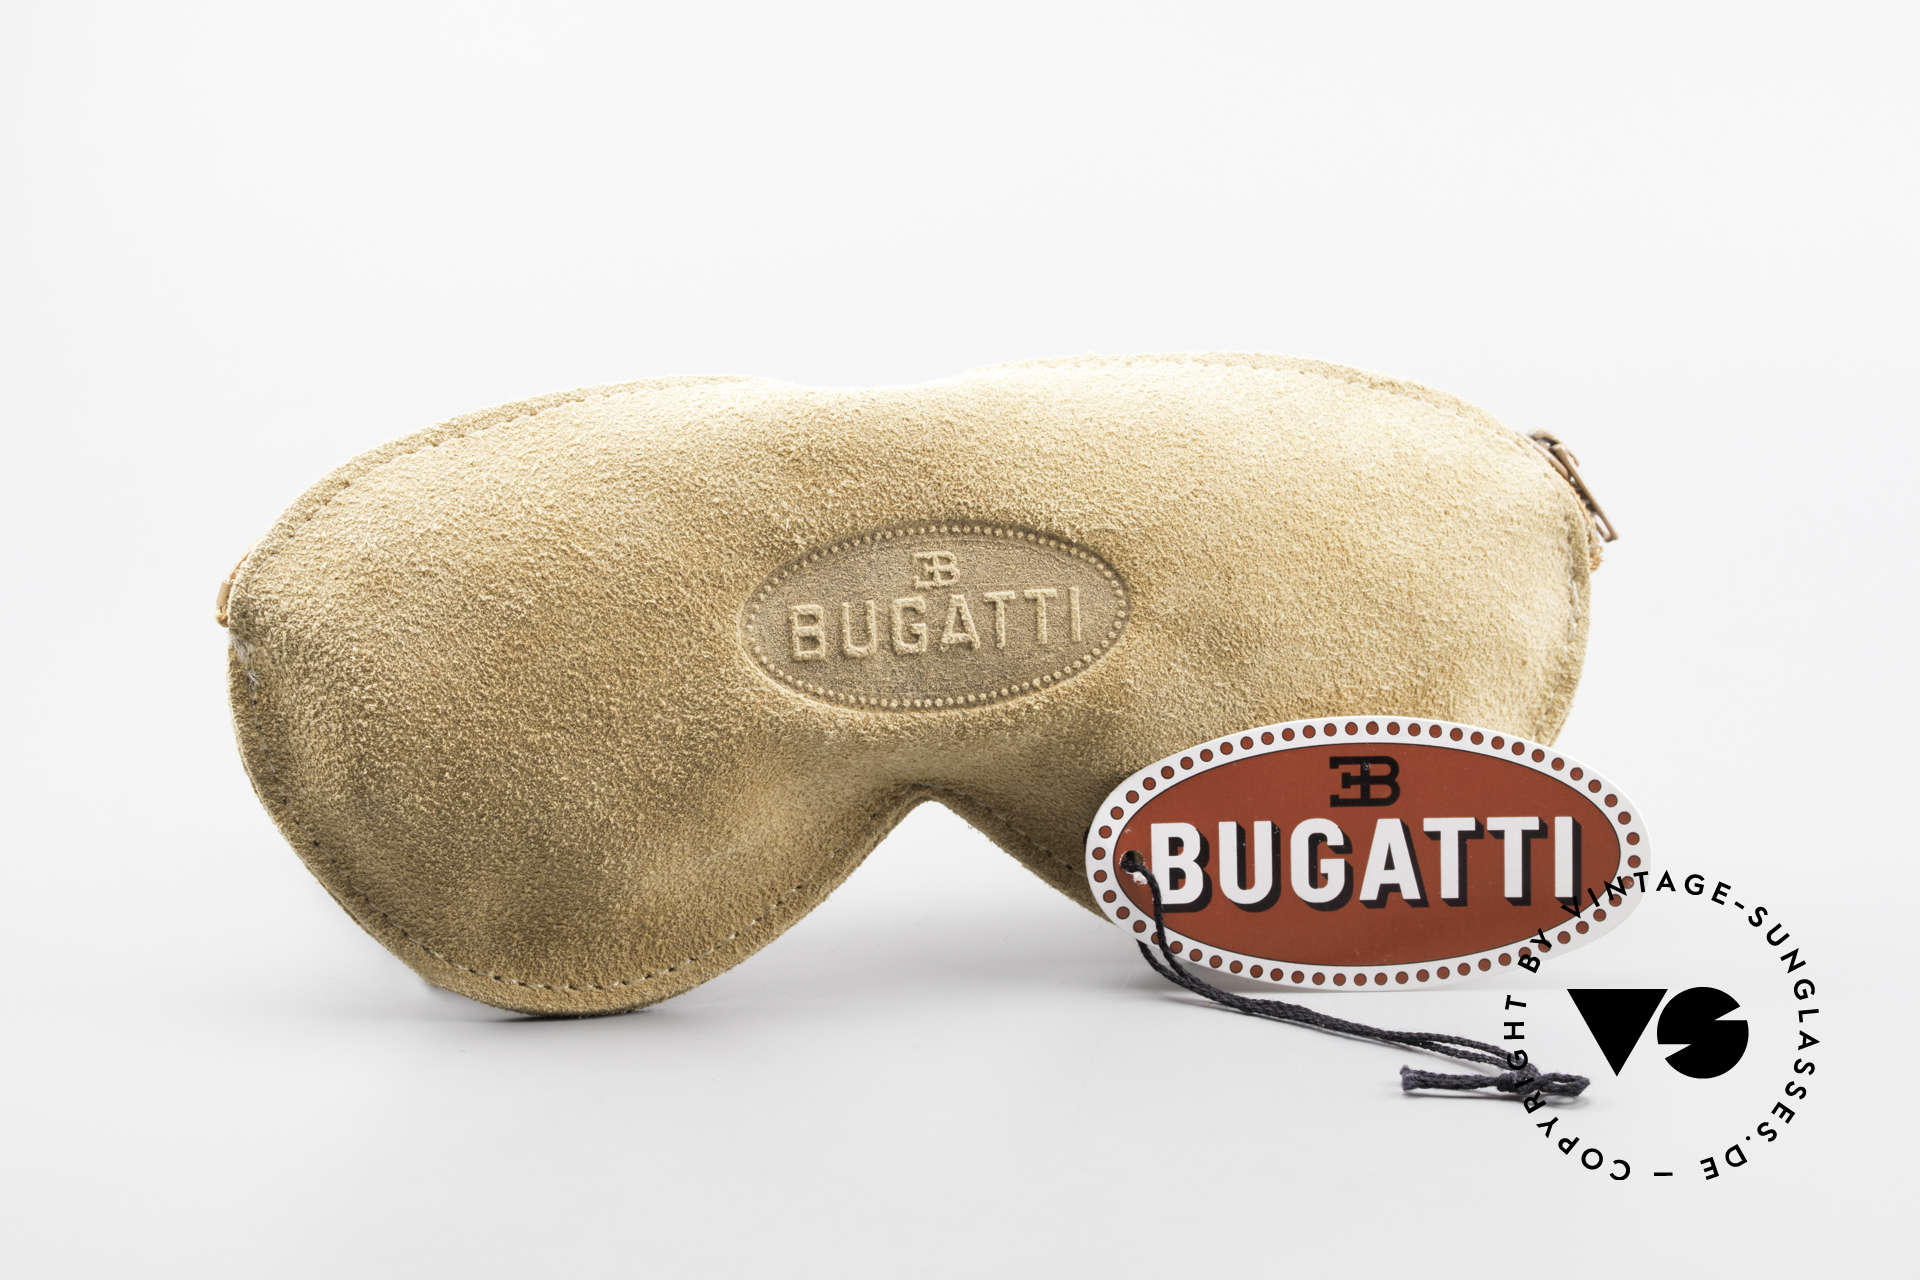 Bugatti 03308 True Vintage 80's Sunglasses, NO RETRO fashion, but an authentic old 80's original, Made for Men